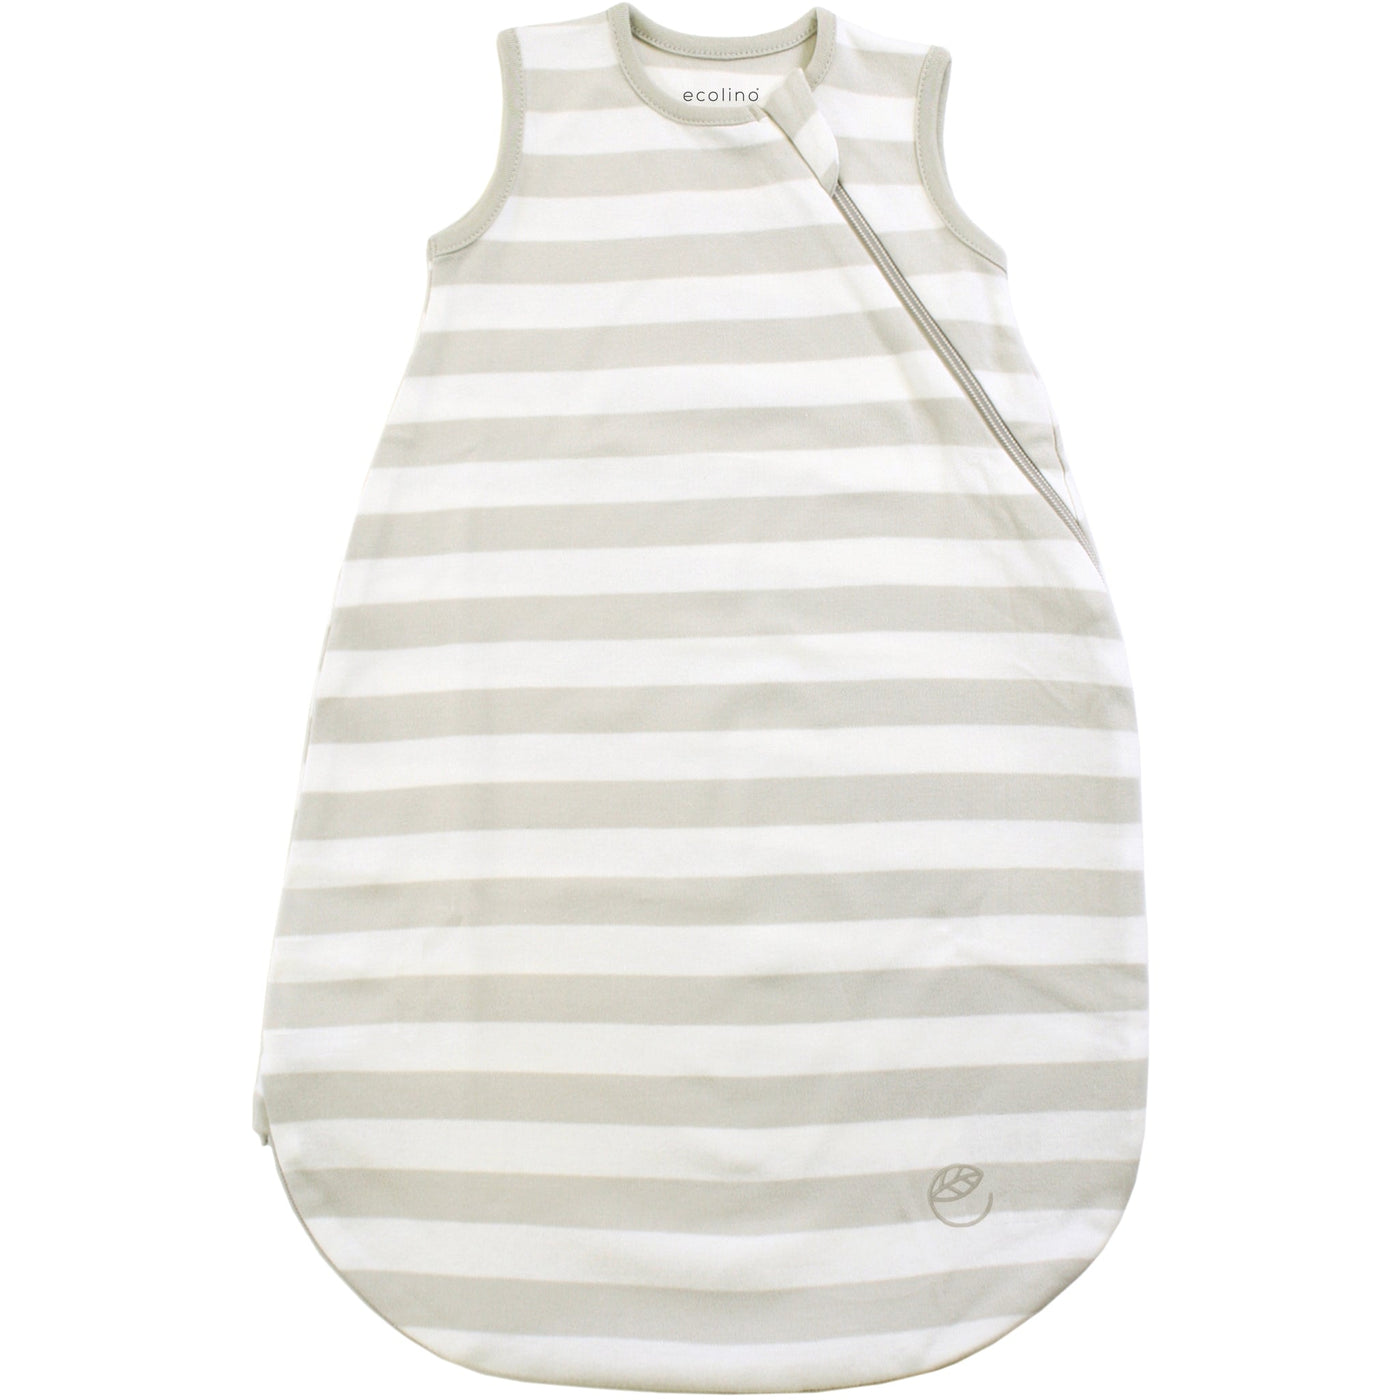 Ecolino® Organic Cotton Basic Baby Sleep Bag or Sack, Gray